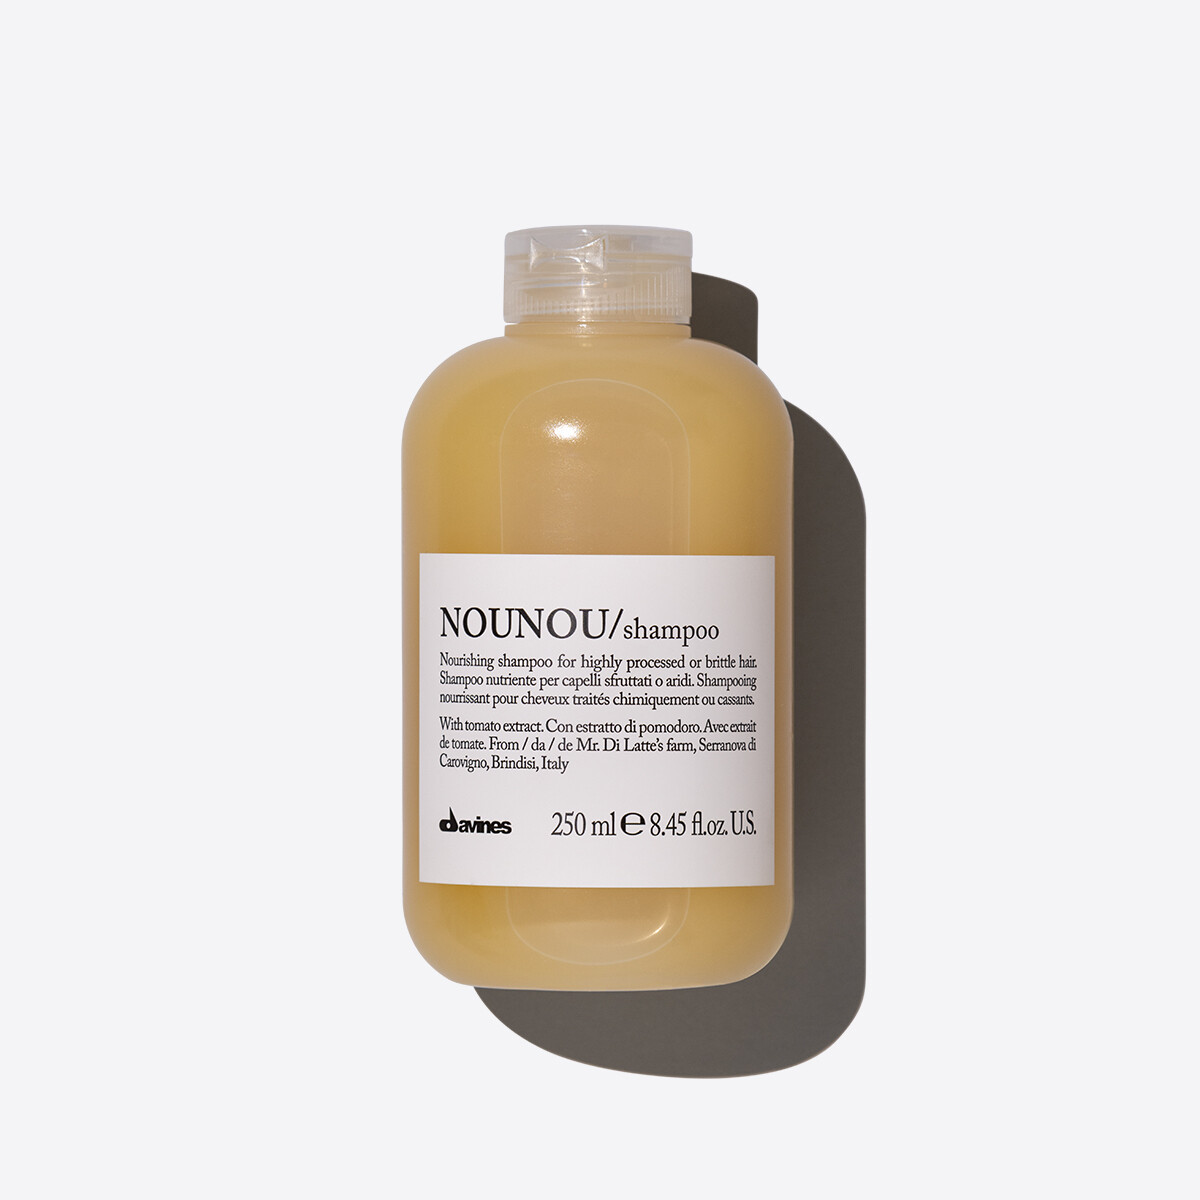 NOUNOU/shampoo 250ml